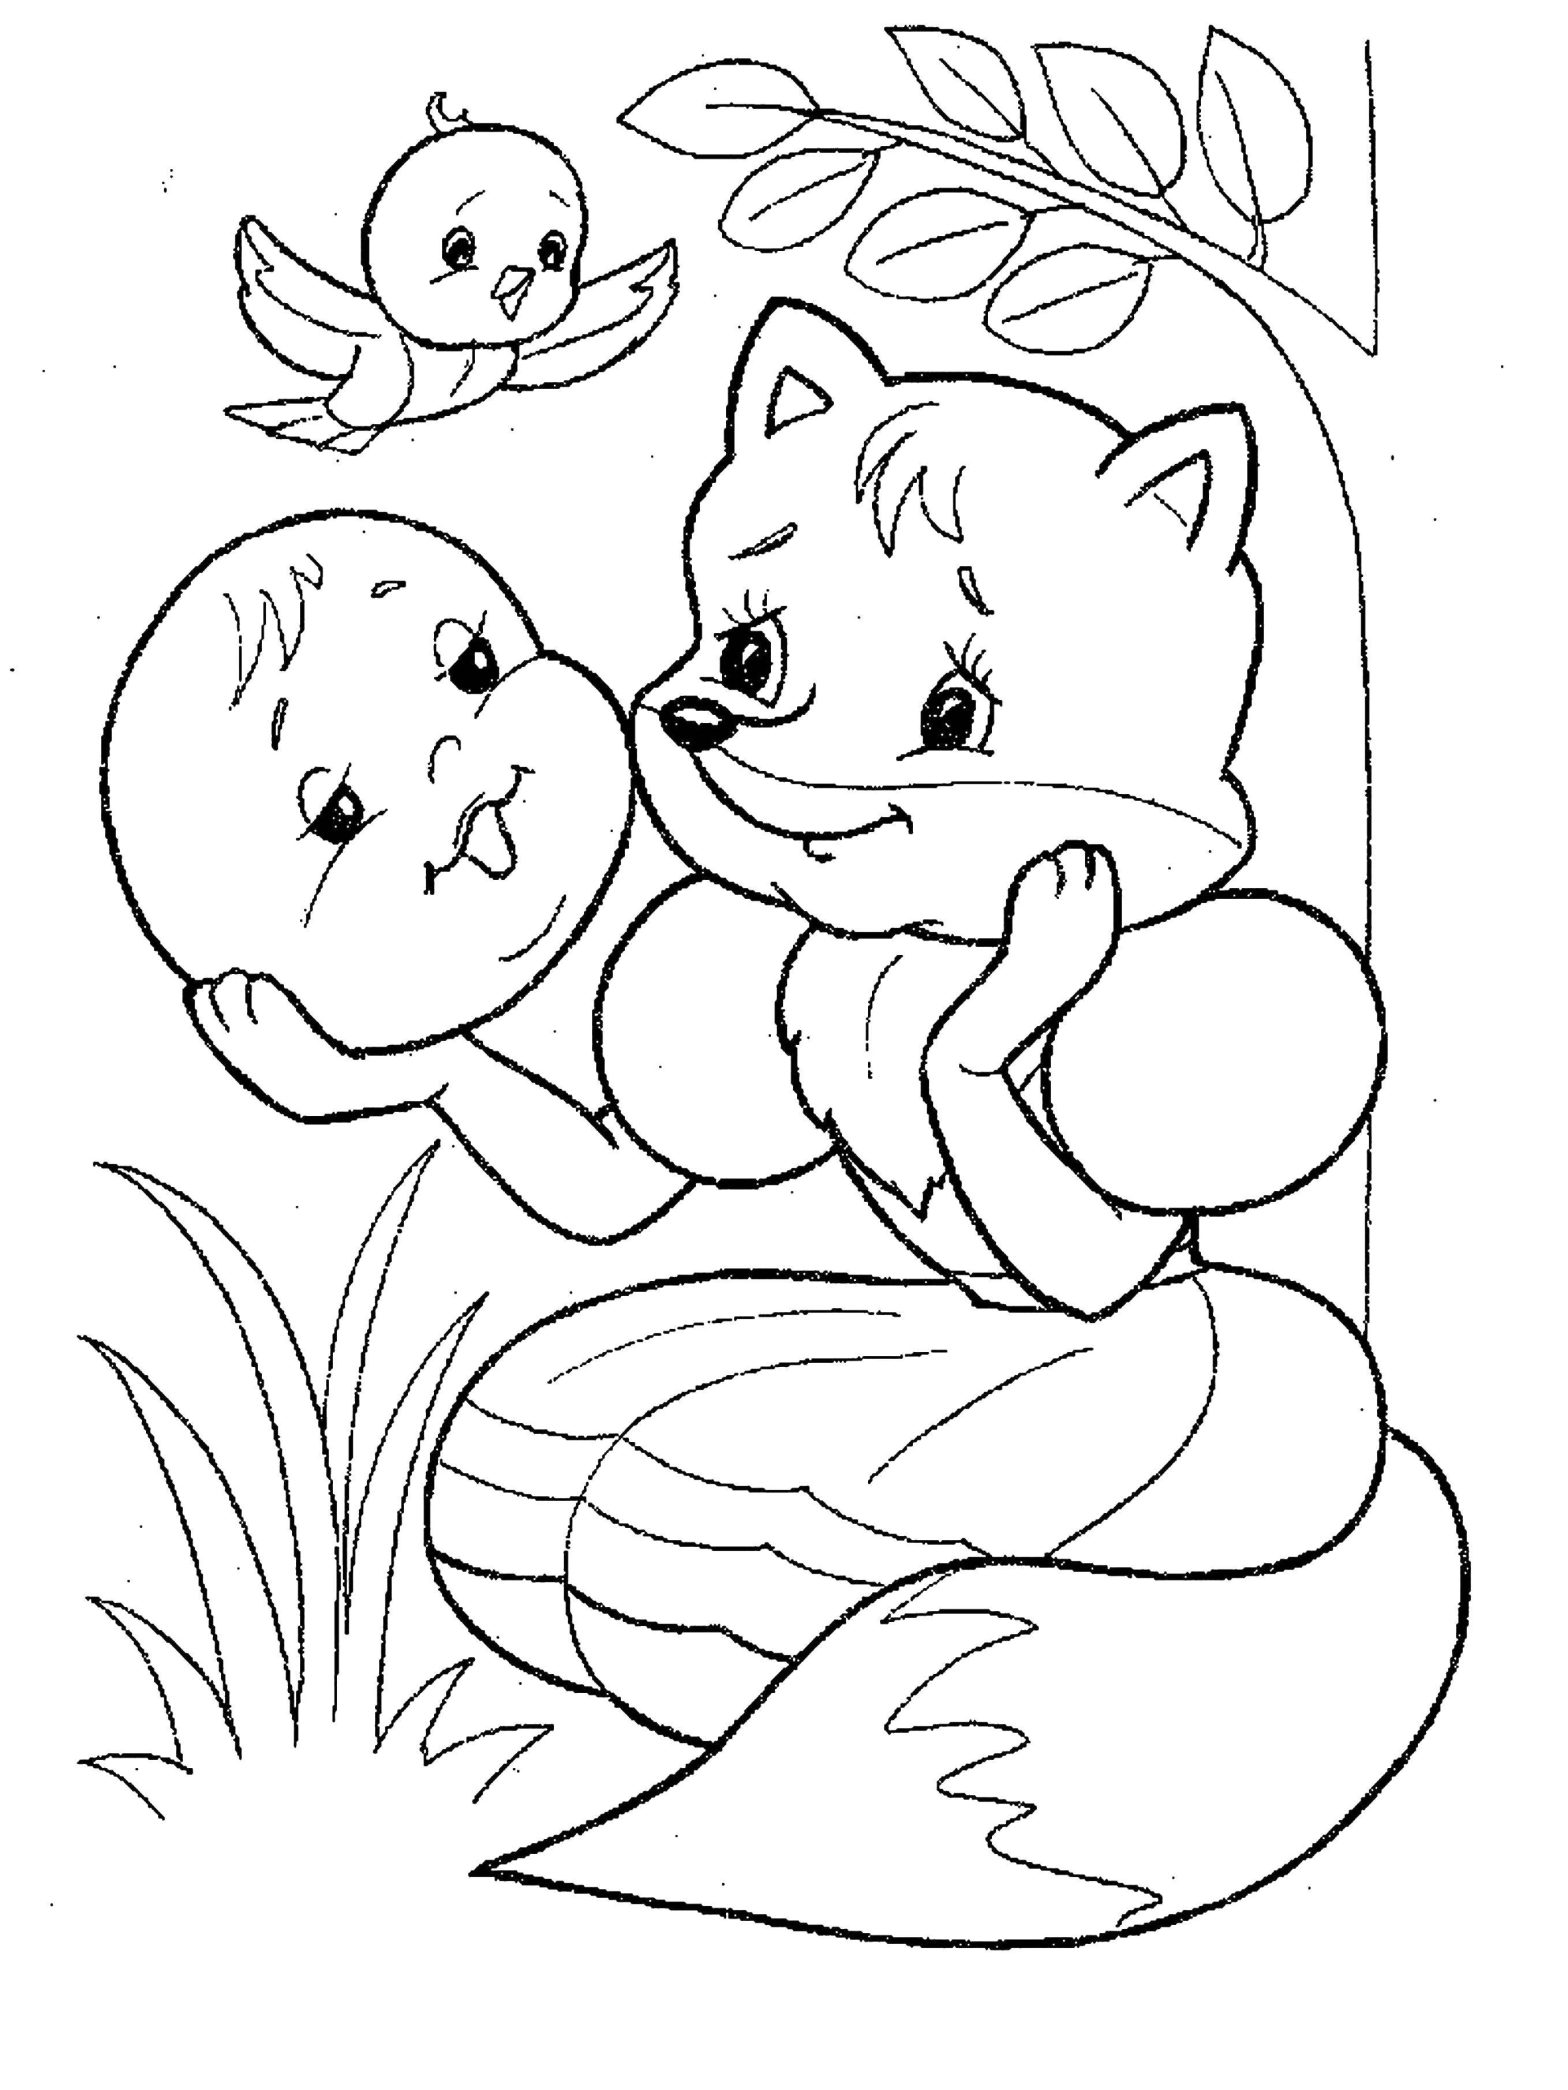 Картинка для раскраски с персонажами из сказки Колобок и Лиса (колобок, лиса)